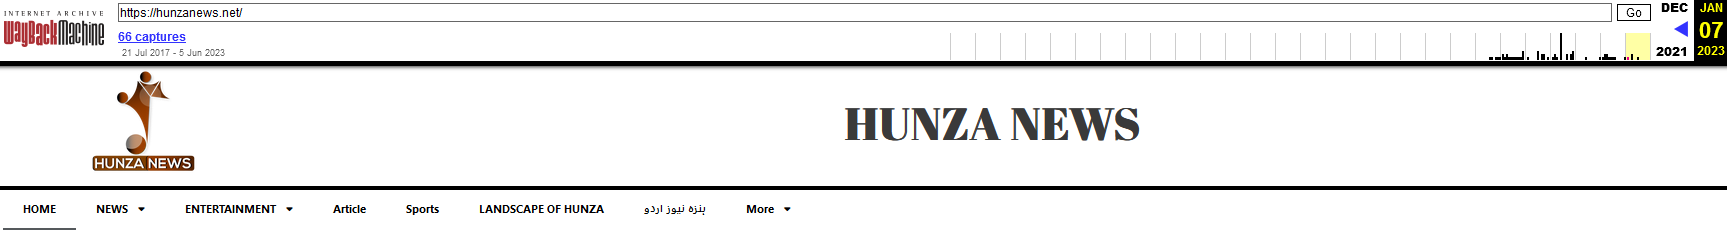 Slika 4 Prenova aplikacije Hunza News brez možnosti prenosa